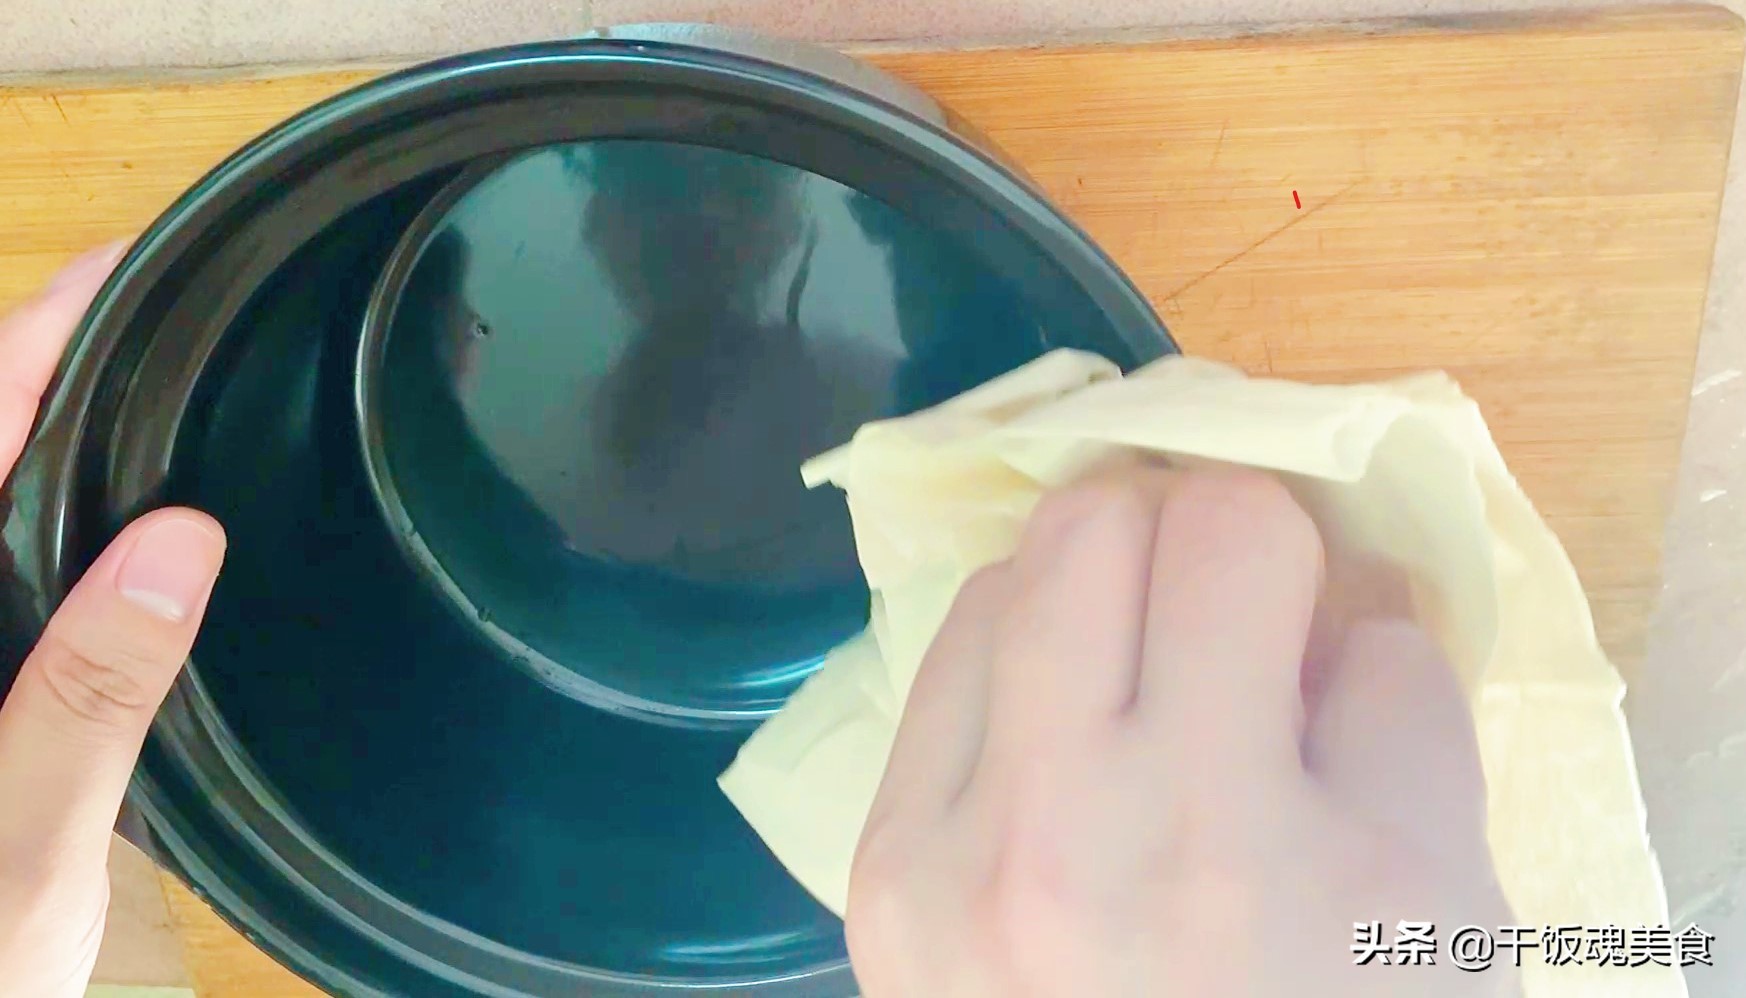 新买的砂锅使用前需怎么处理，处理黄，不会裂的方法介绍？